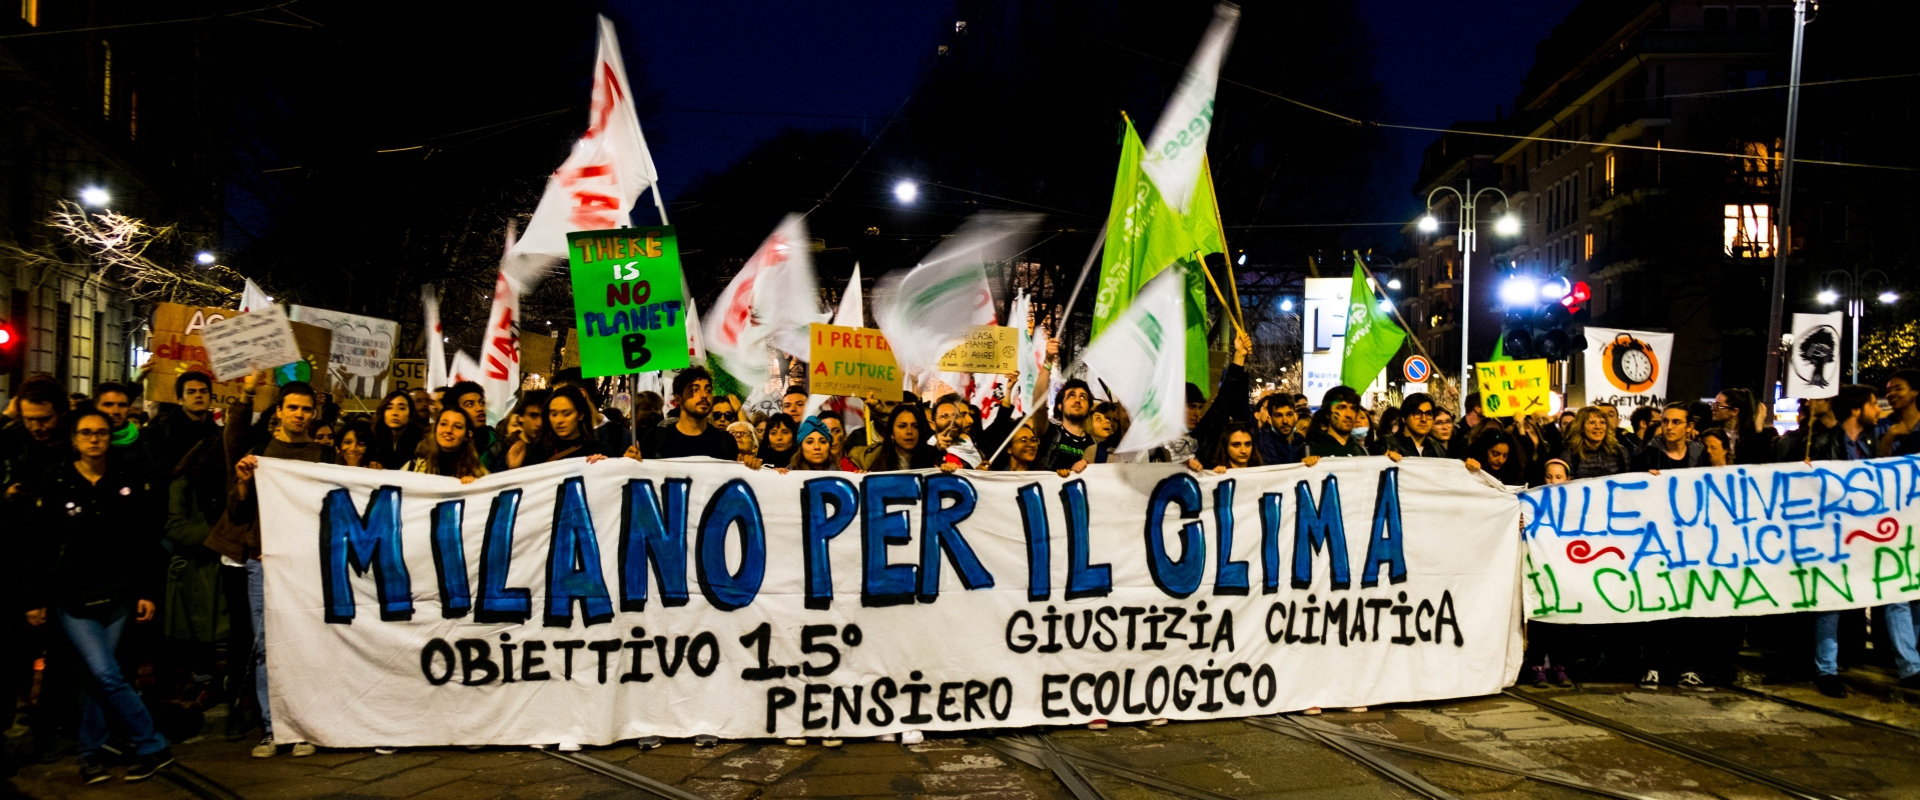 Milano per il clima mani tese 2019